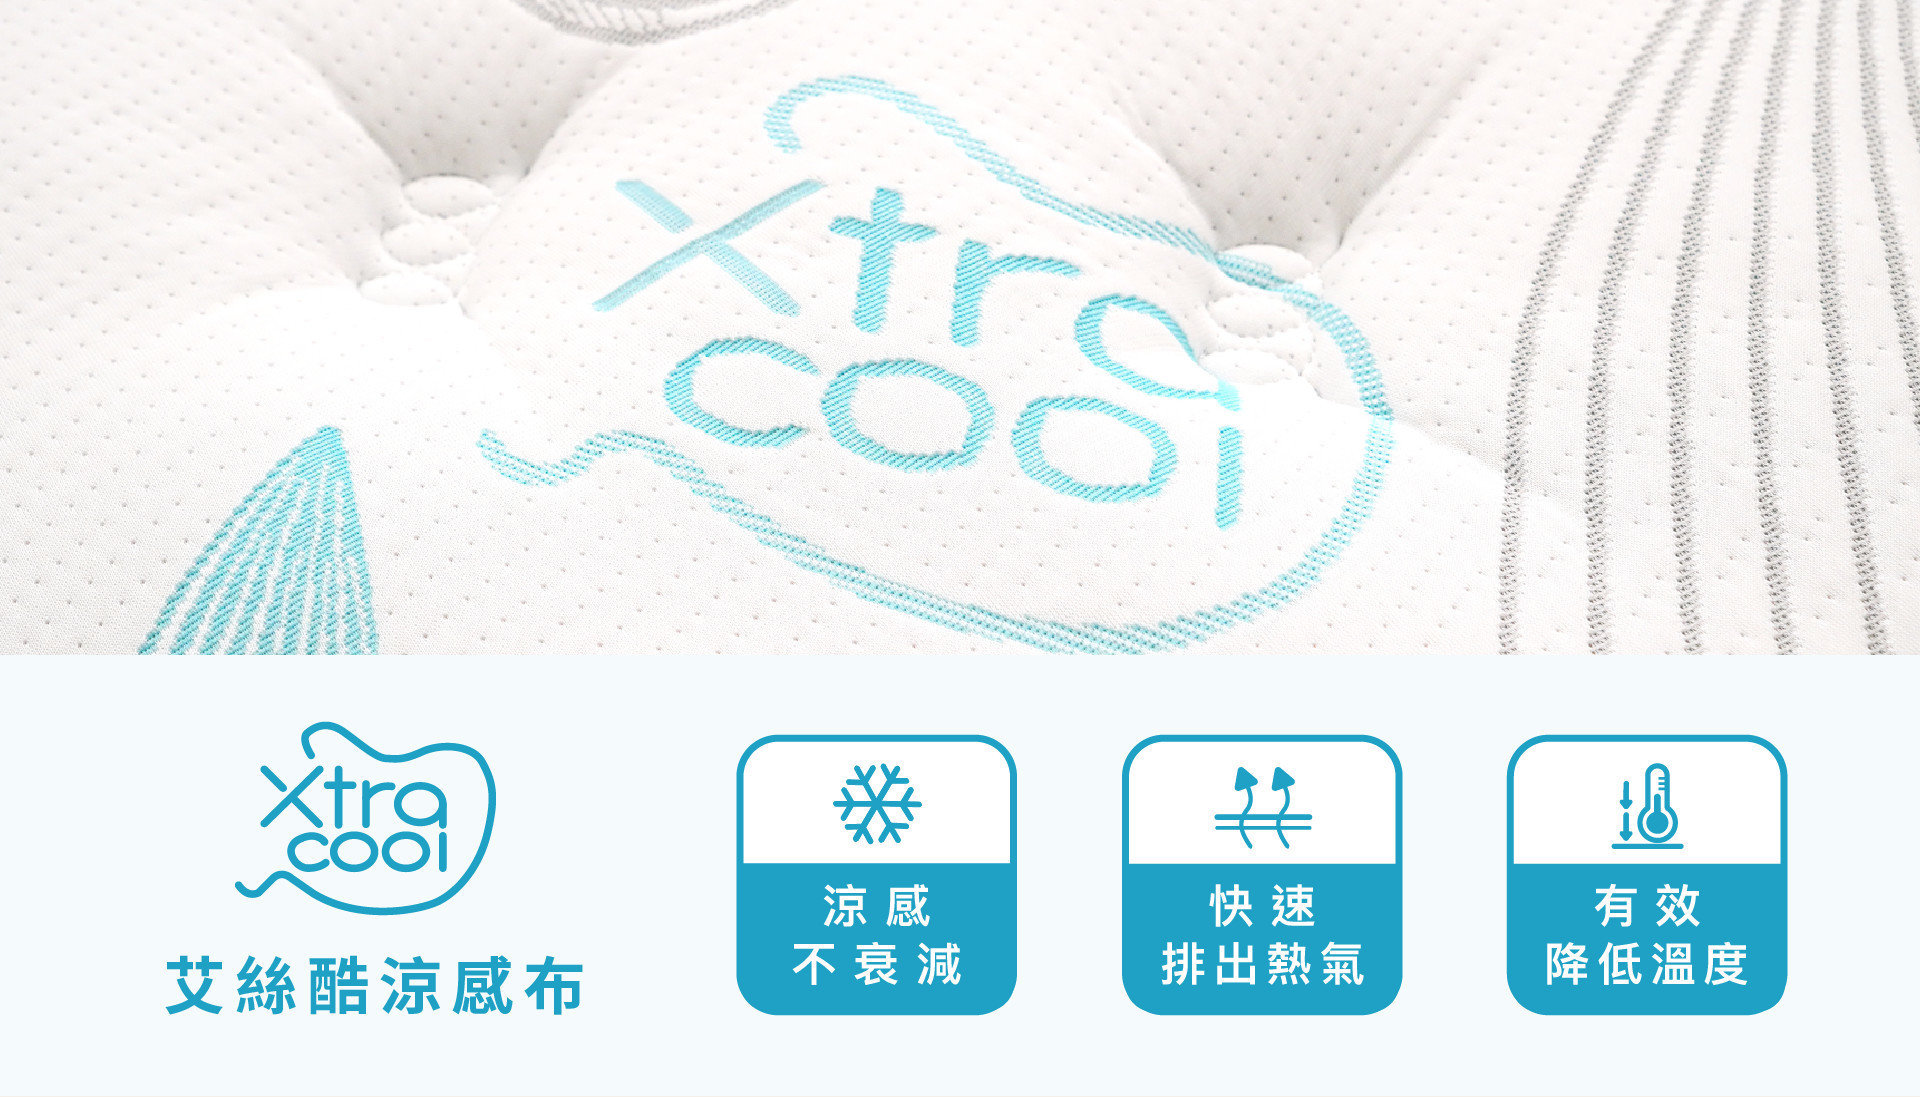 艾斯床墊採用專利技術Xtra cool艾絲酷表布，具有優異且高效率傳導，可有效降低體感溫度，長時間睡眠也不易悶熱。